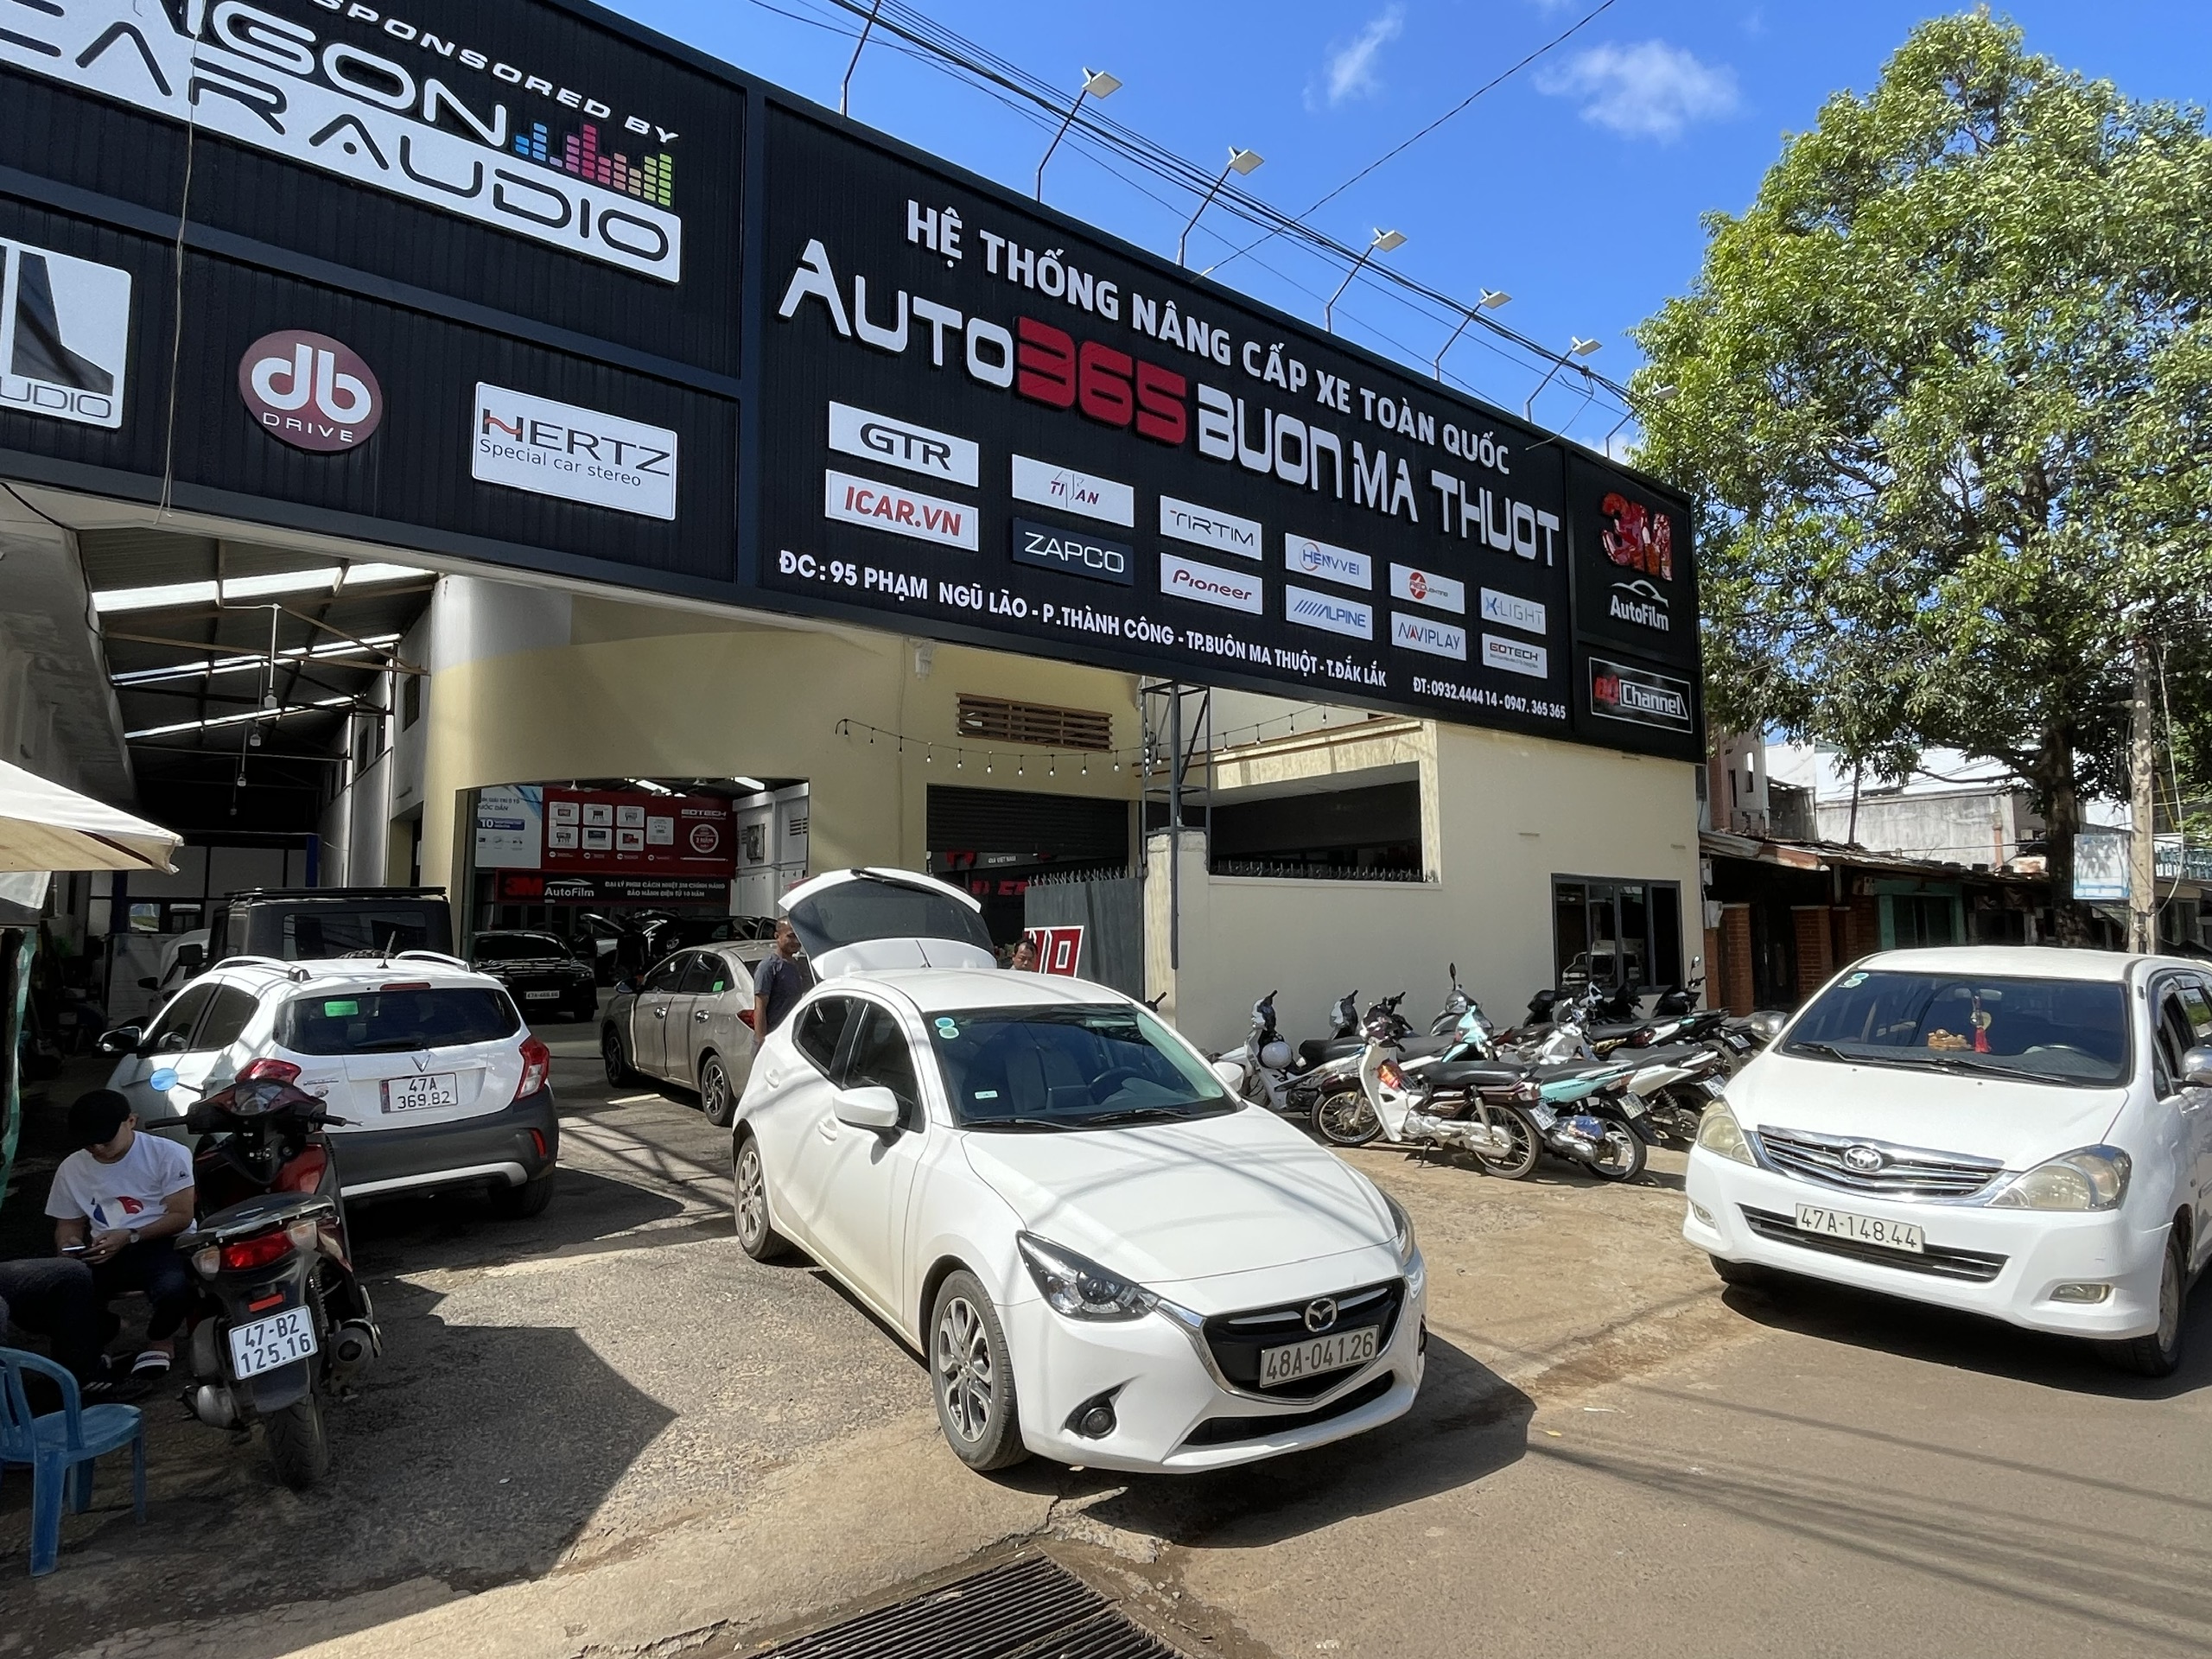 Auto 365 Buôn Mê Thuột  – Đại lý bán hàng vật liệu cách âm SIP tại Đắk Lắk